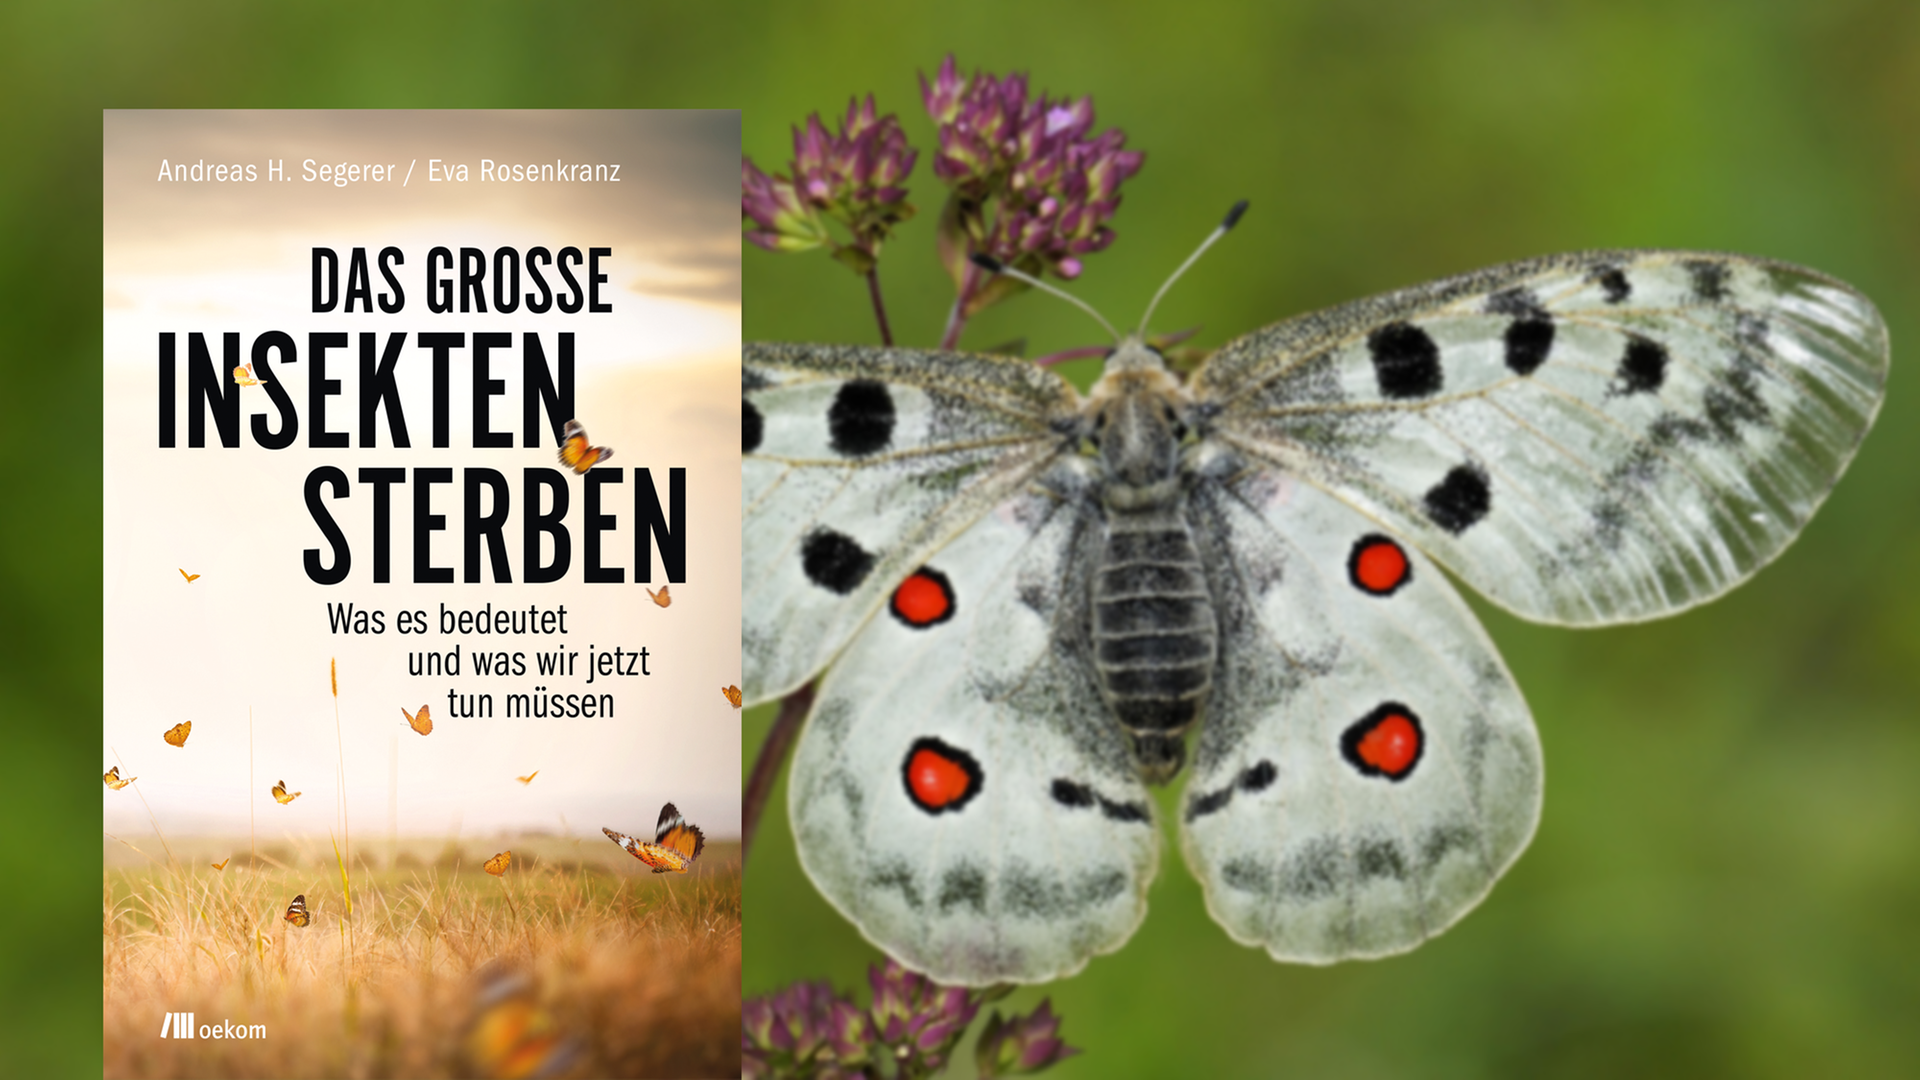 Cover von Andreas H. Segerer / Eva Rosenkranz: "Das große Insektensterben", im Hintergrund ist ein Apollofalter zu sehen